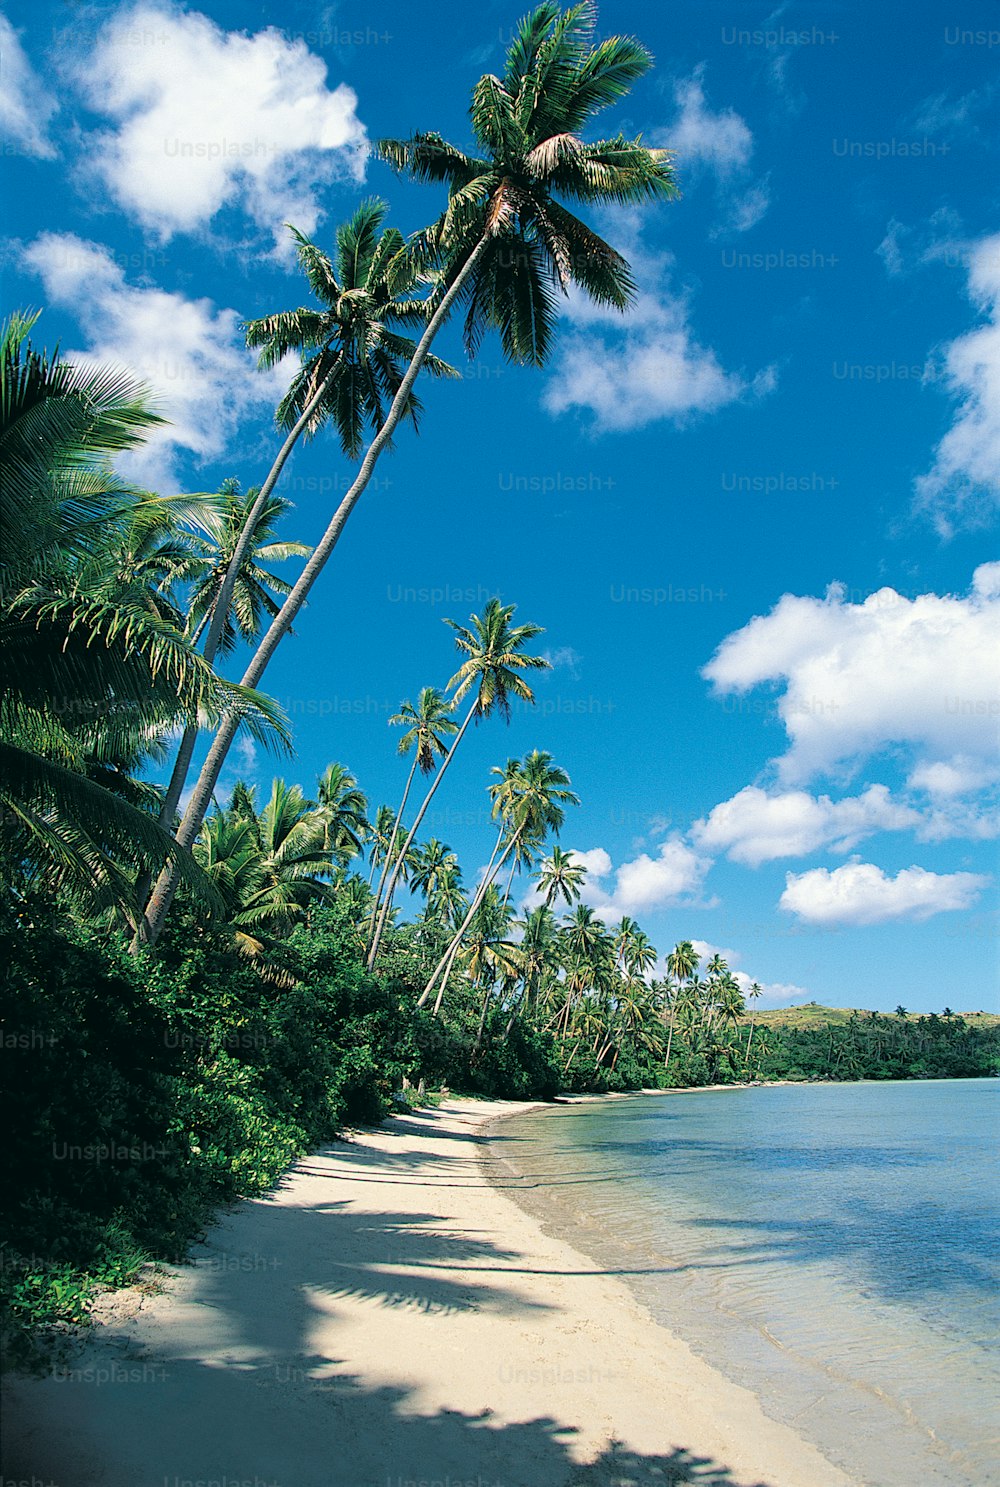 una playa de arena con palmeras y agua